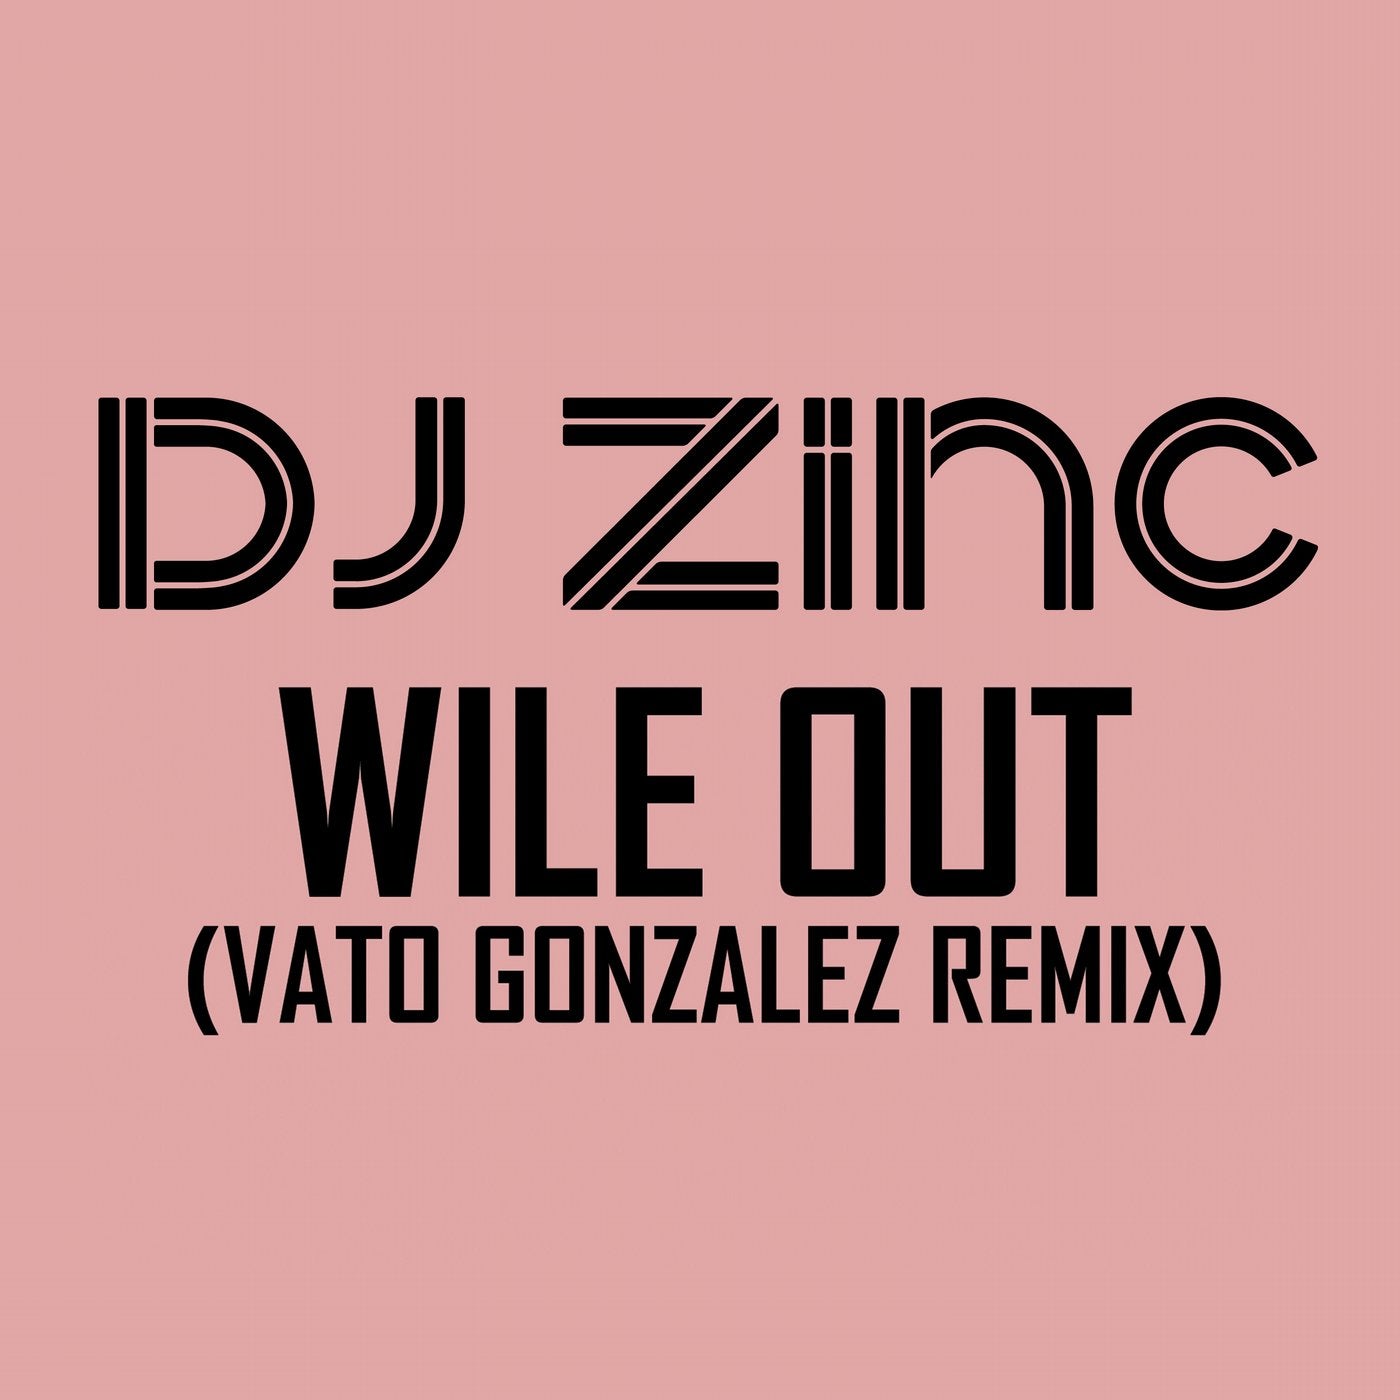 Wile Out (feat. Ms. Dynamite) [Vato Gonzalez Remix]